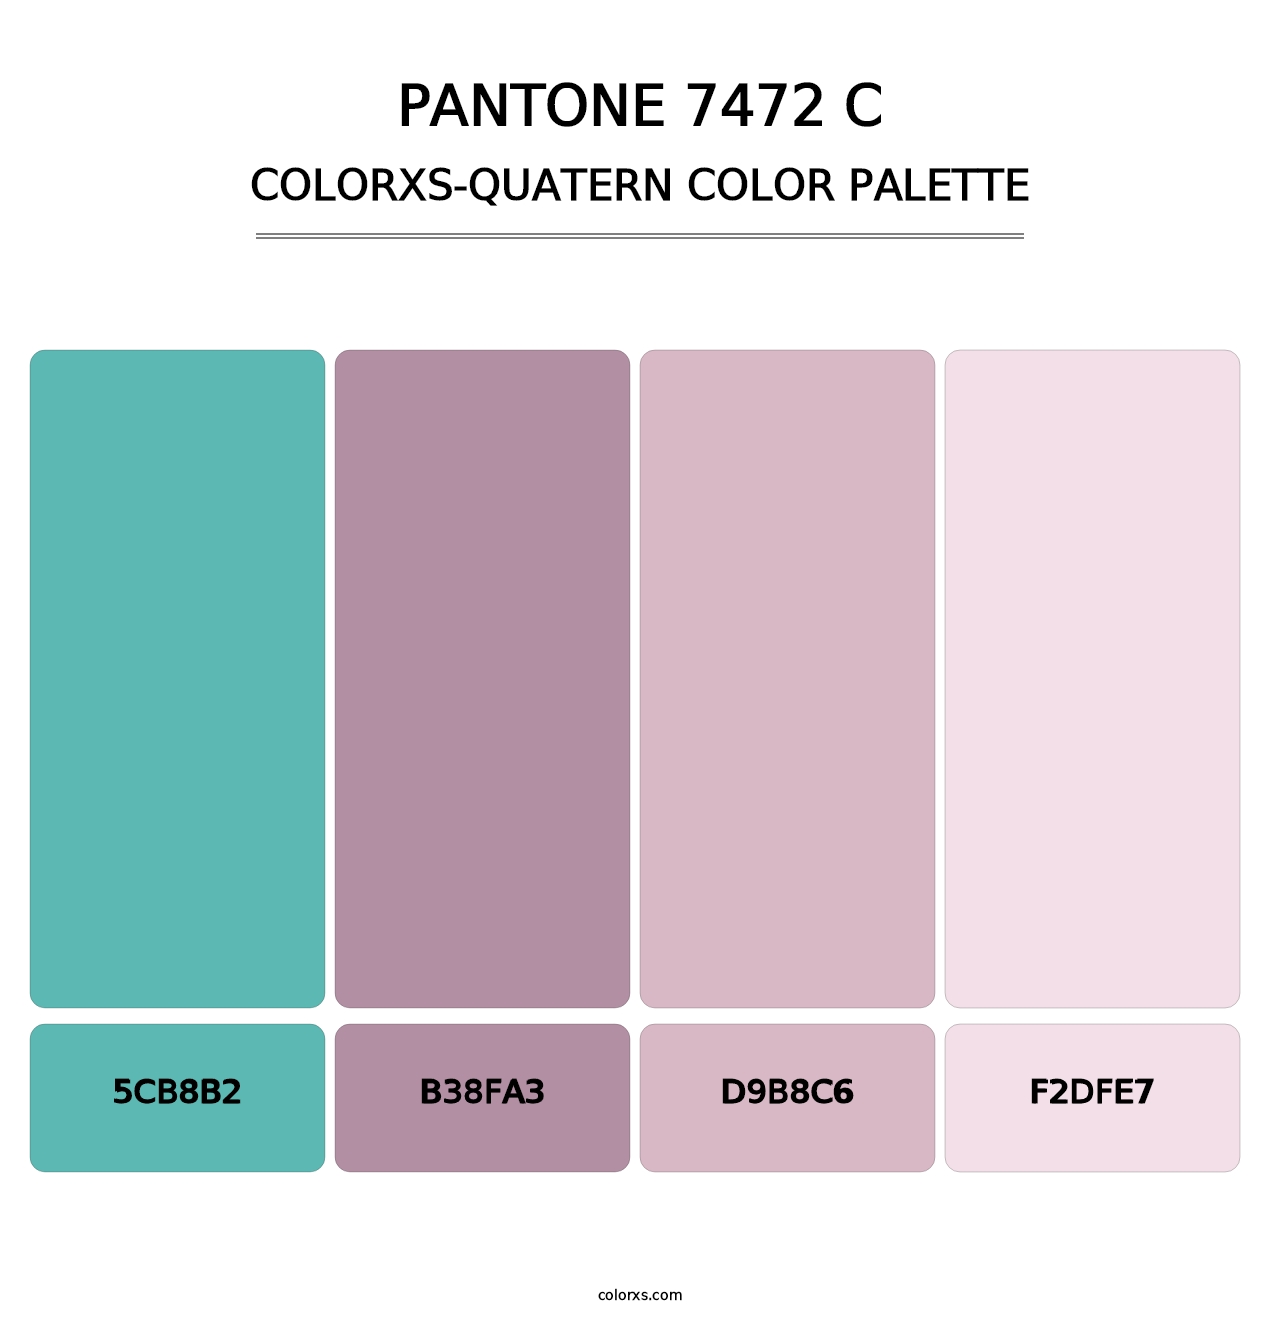 PANTONE 7472 C - Colorxs Quatern Palette